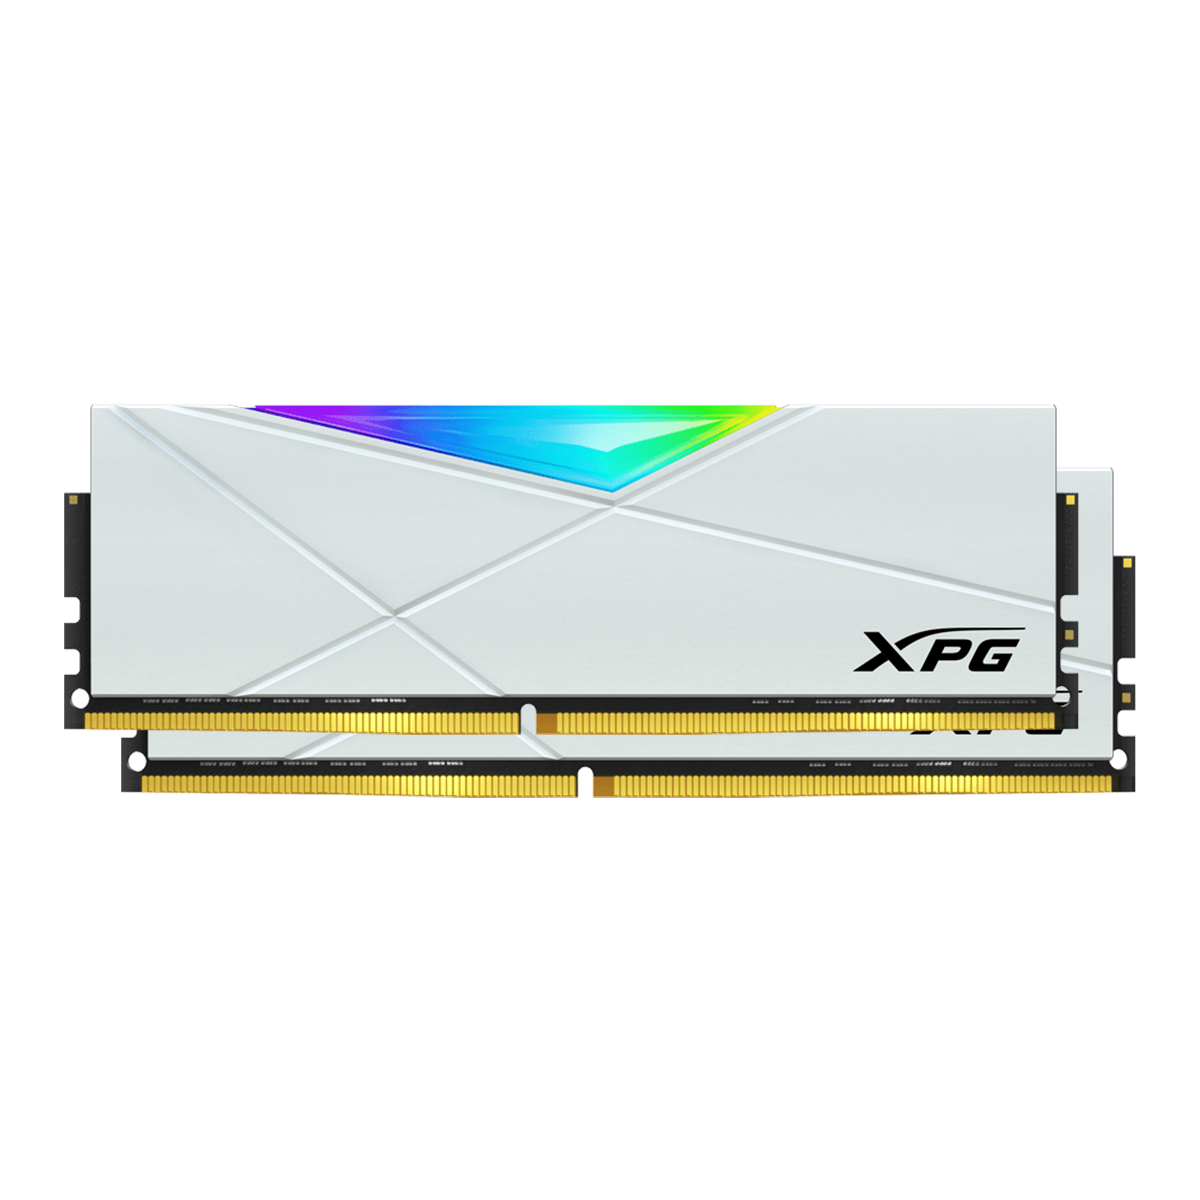 Memória DDR4 XPG Spectrix D50, 32GB (2x16GB), 3200Mhz, RGB, White, AX4U320016G16A-DW50